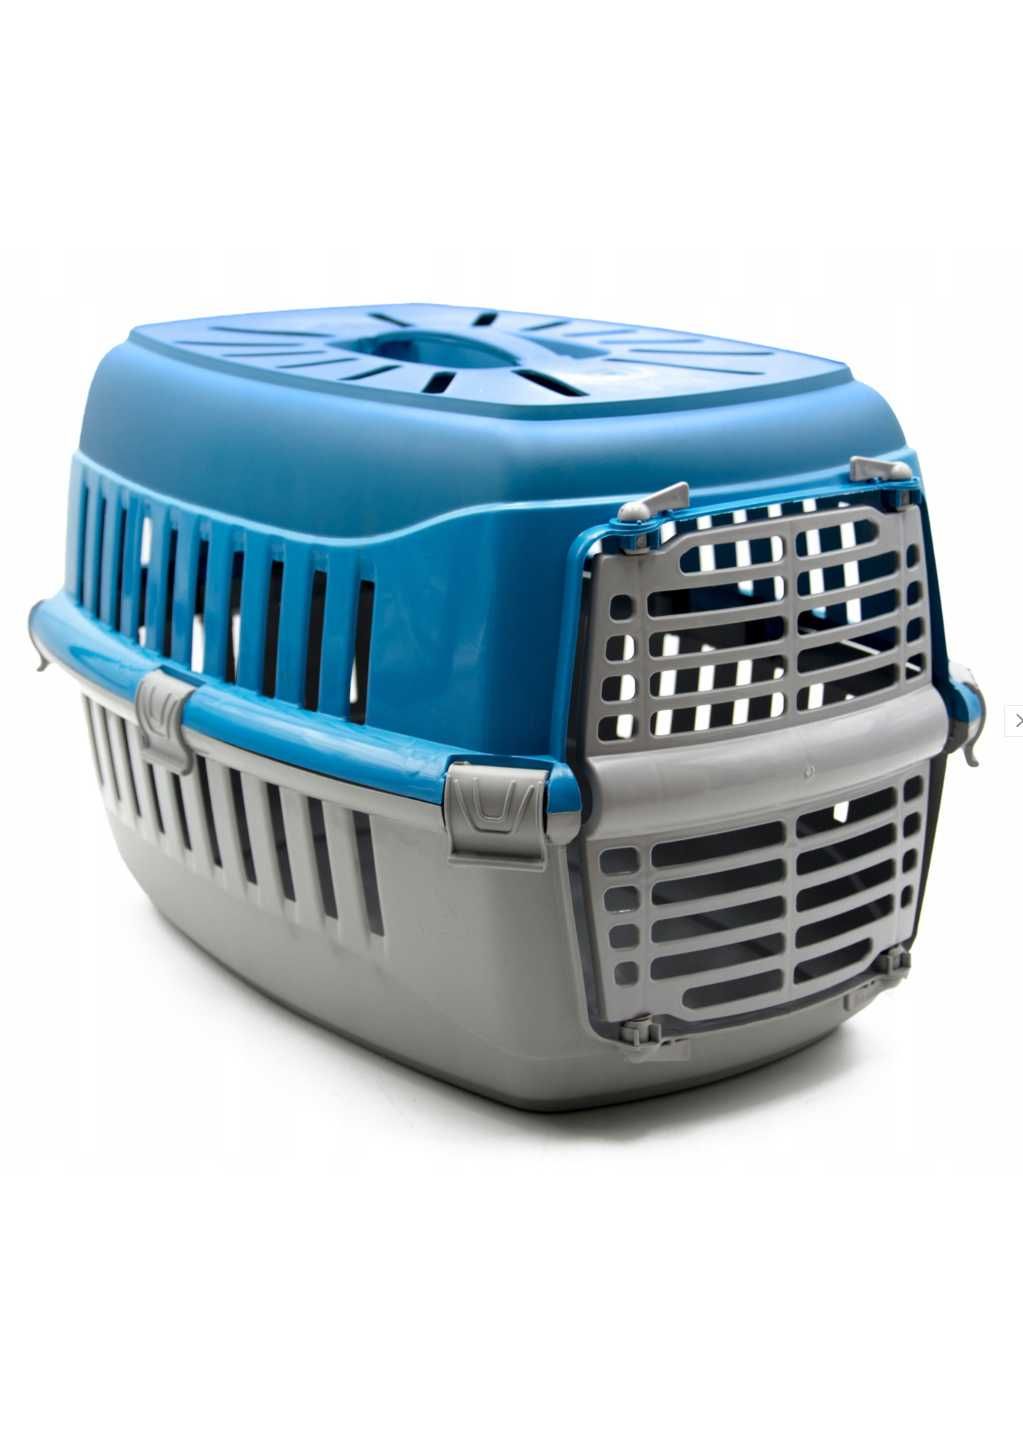 Transporter 50x30x30cm do 12kg dla kota psa królika zwierząt NOWY